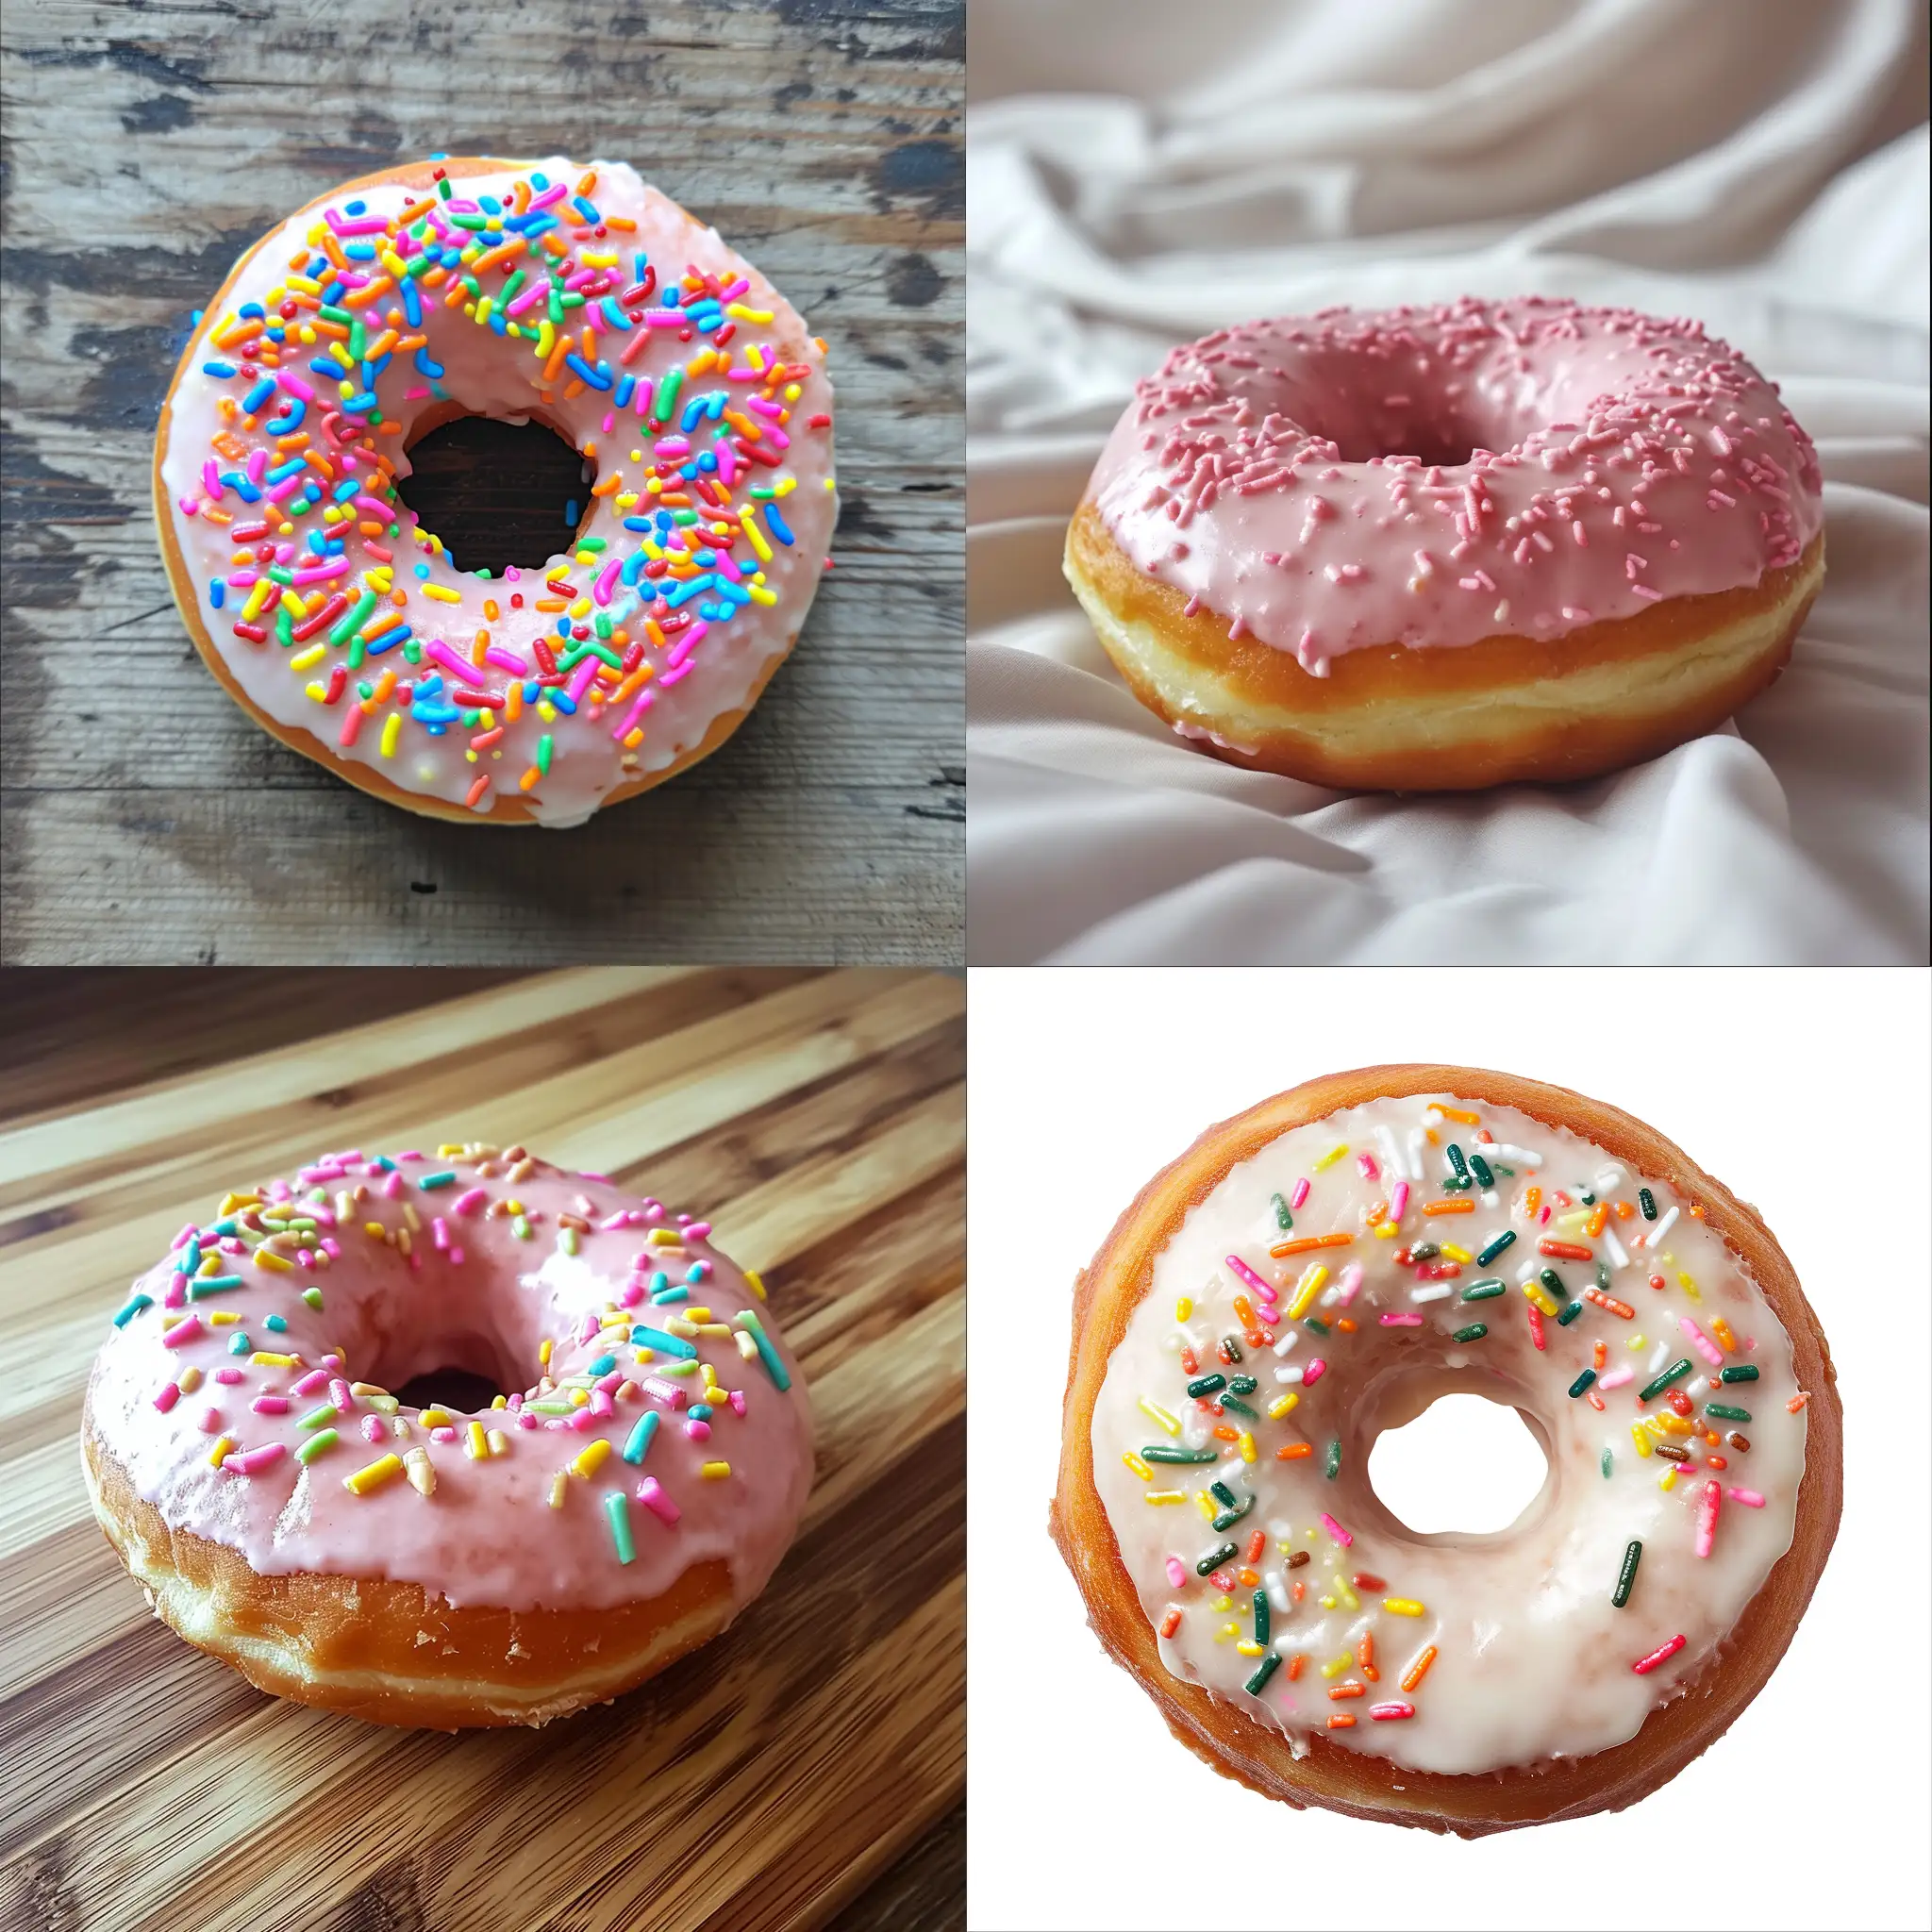 Colorful-Donut-Art-with-Unique-Design-Vibrant-Circular-Delight